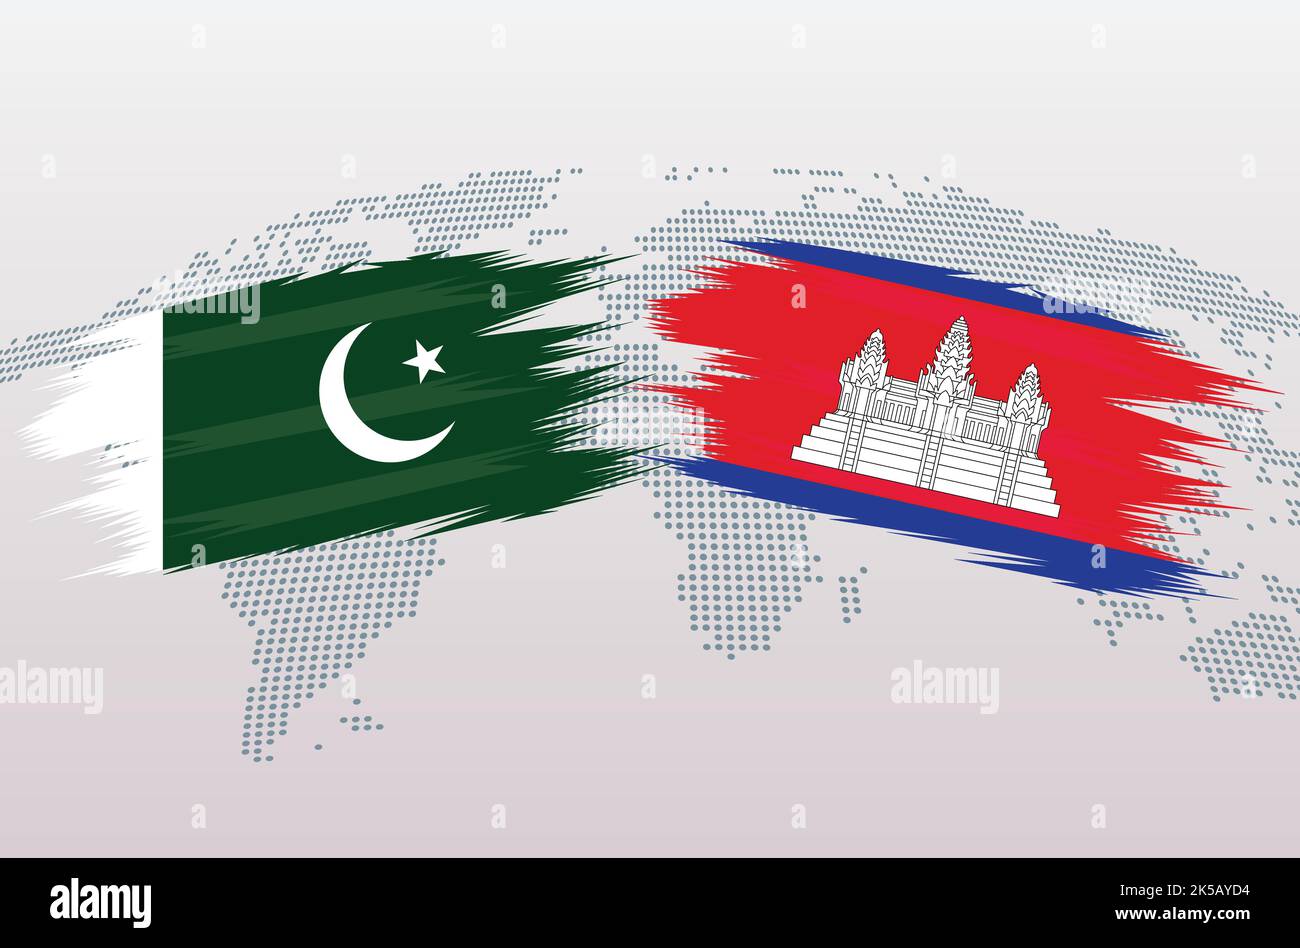 Bandiere Pakistan vs B. Bandiere della Repubblica islamica del Pakistan VS B, isolate su sfondo grigio della mappa del mondo. Illustrazione vettoriale. Illustrazione Vettoriale